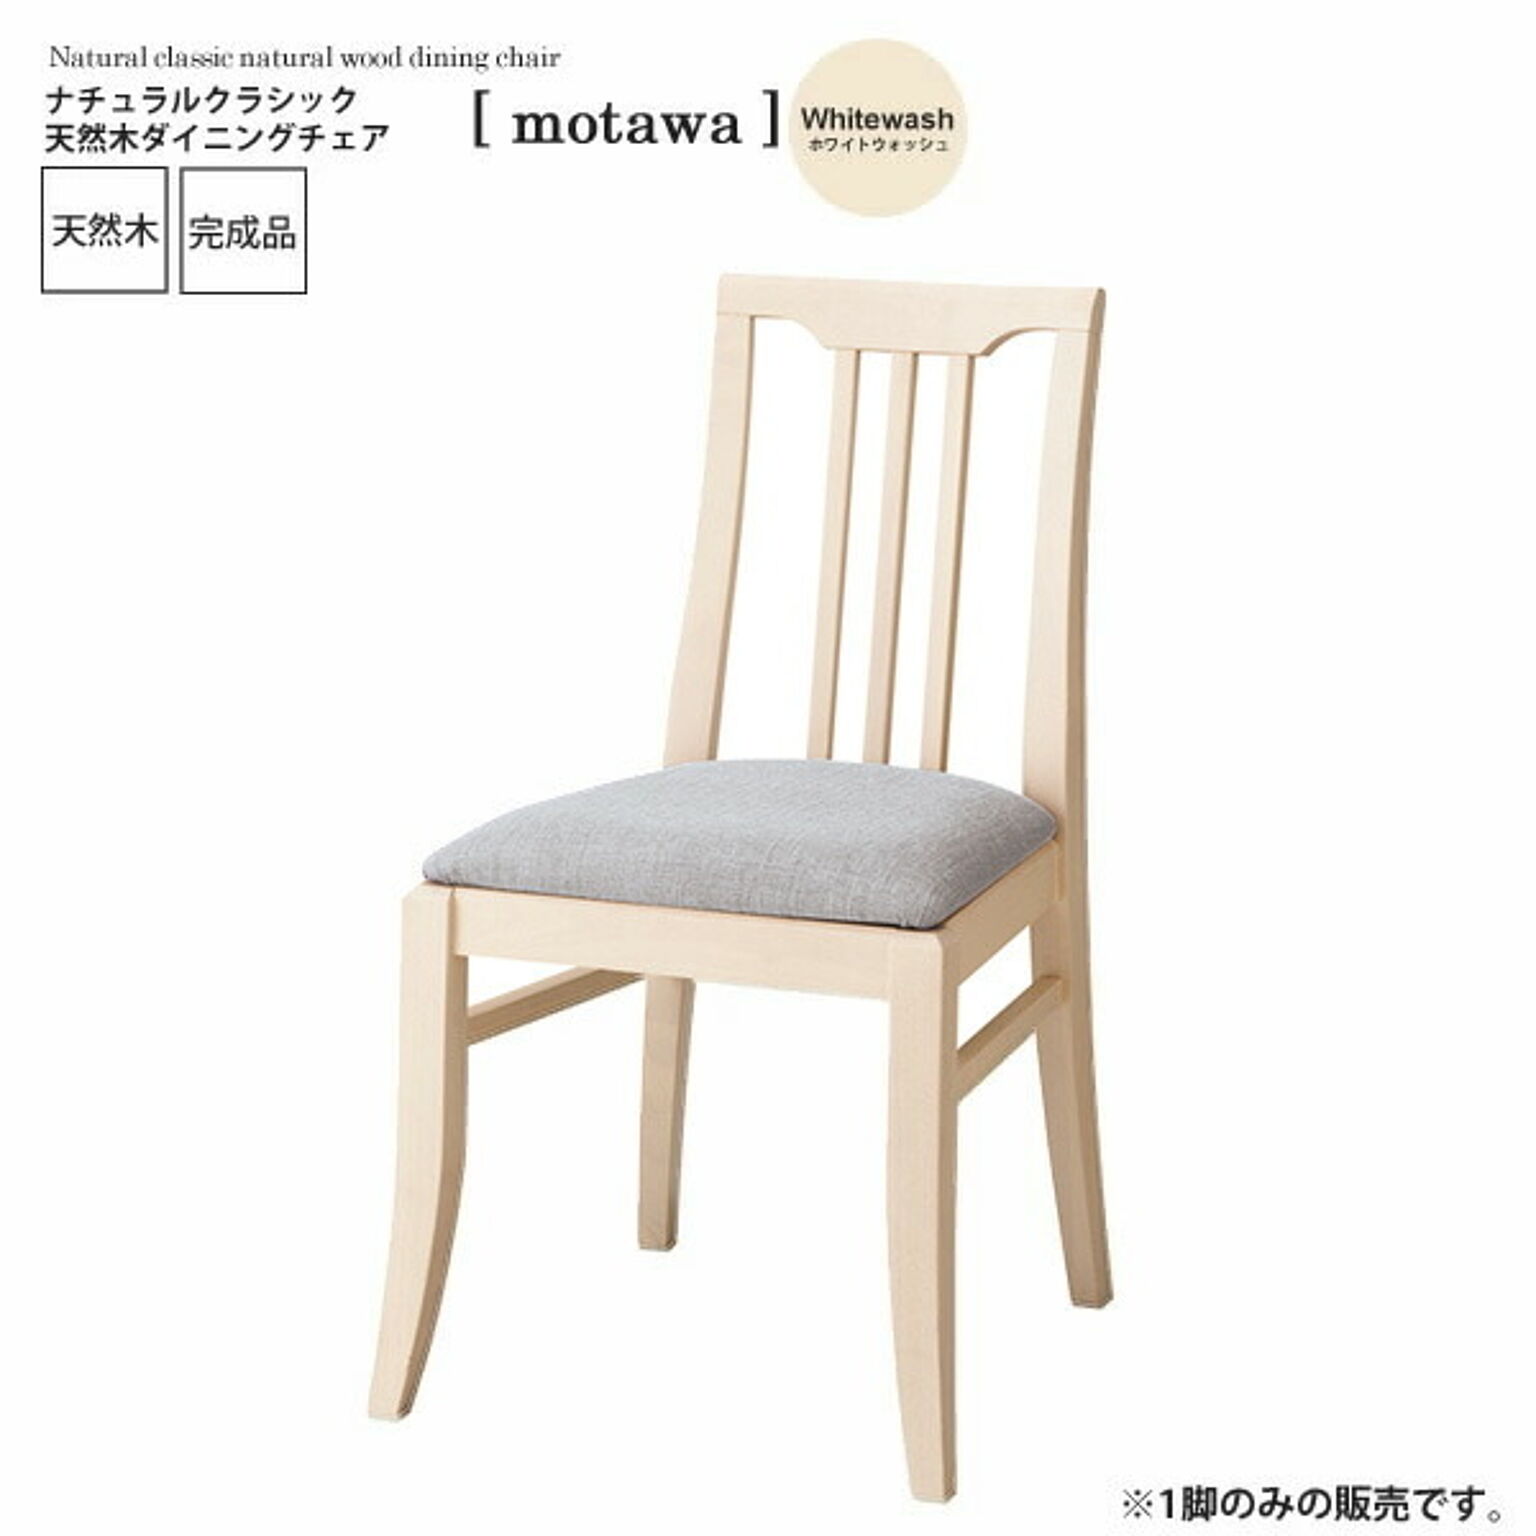 ホワイトウォッシュ ： ナチュラルクラシック 天然木ダイニングチェア【motawa】 ホワイト(white) (ナチュラル) イス 椅子 リビングチェア ワーク デスク 